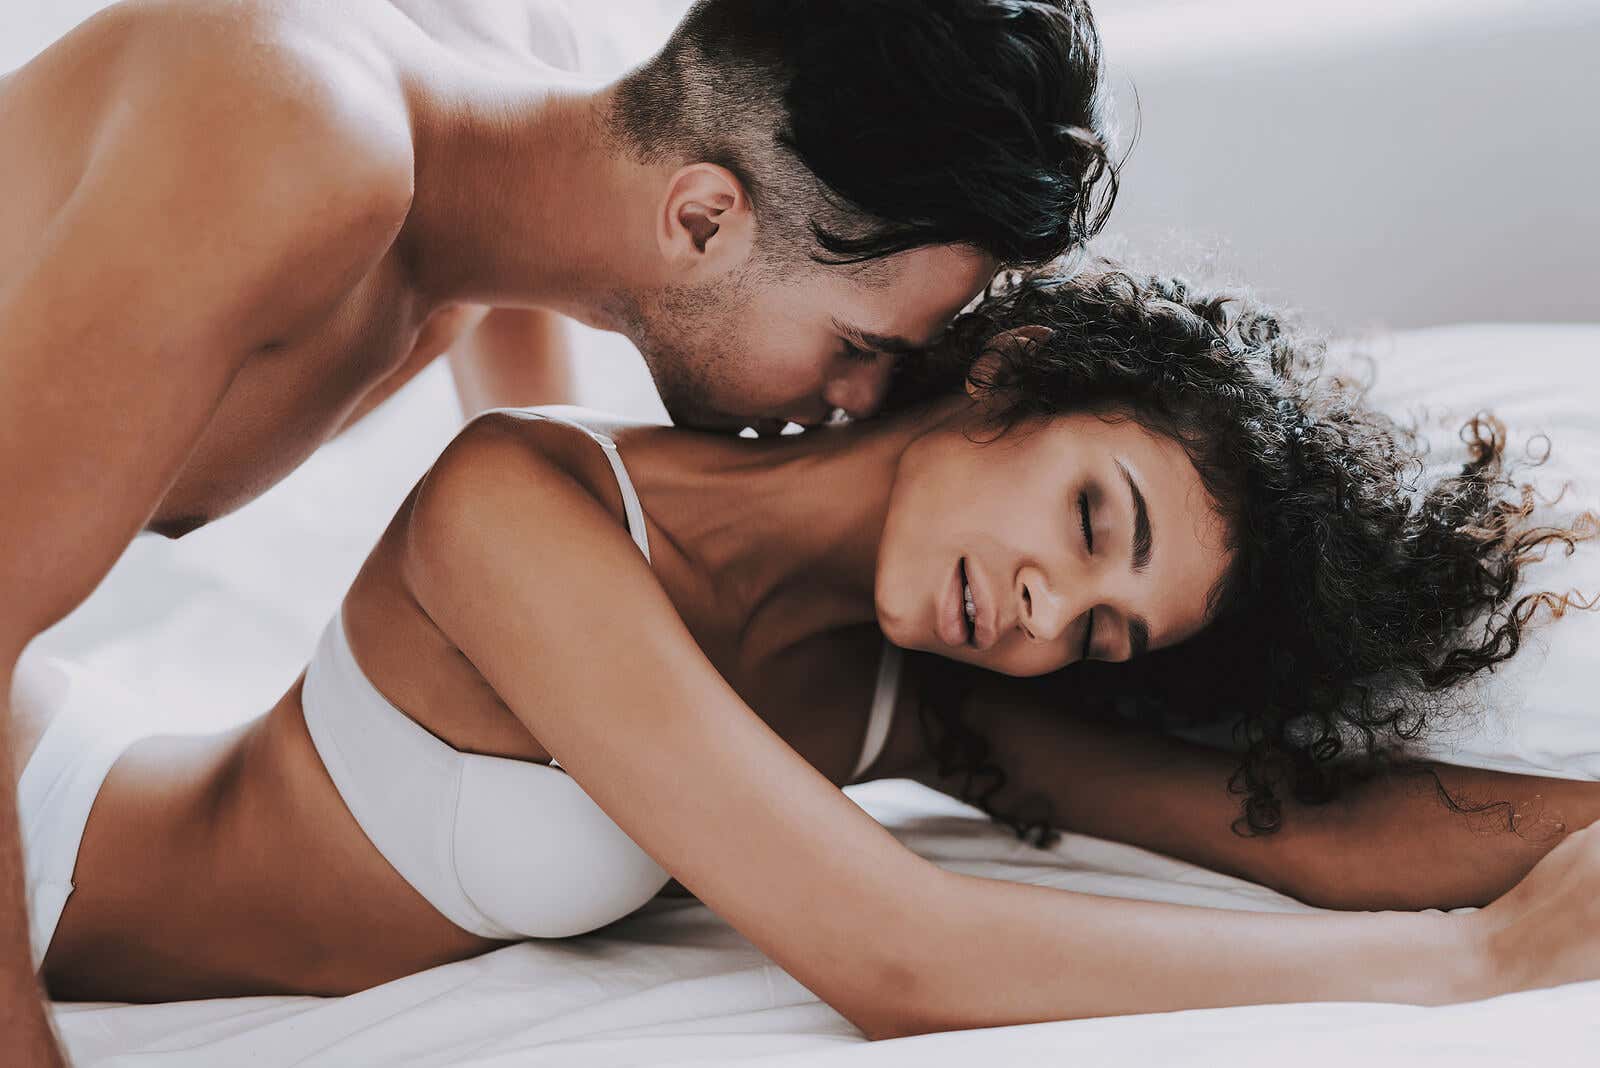 Има ли разлики между правенето на любов и секса?